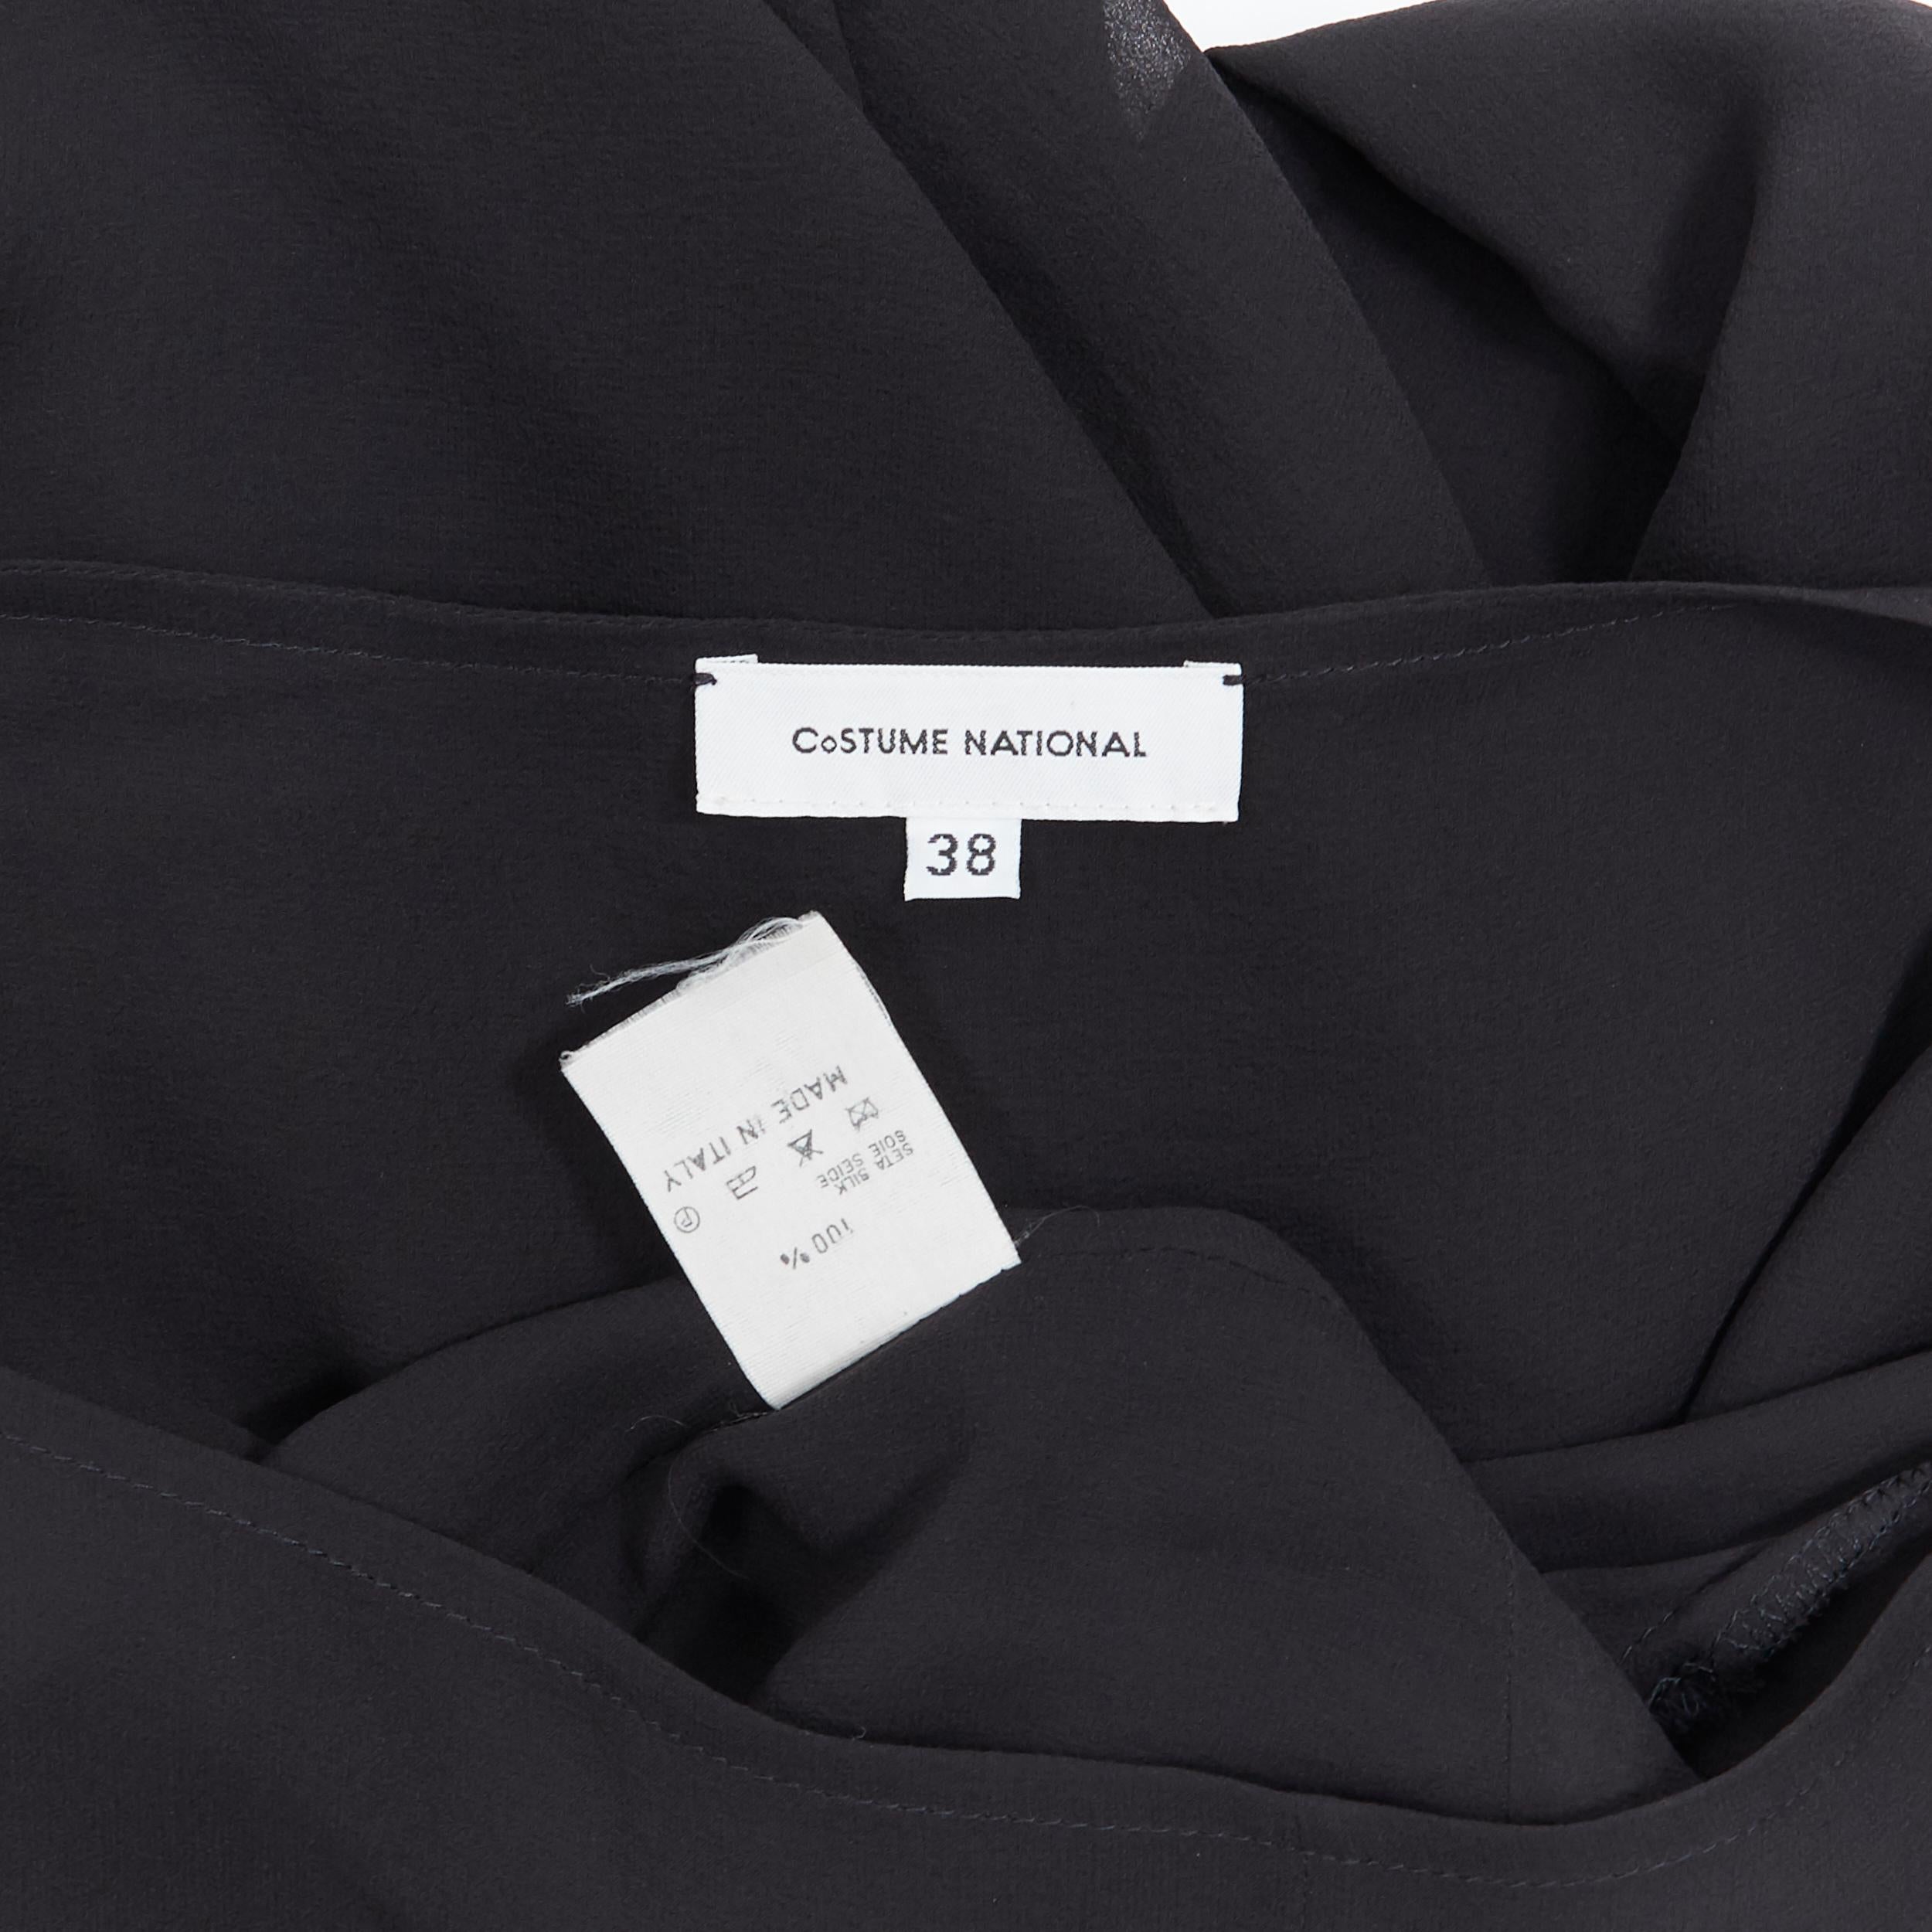 Women's COSTUME NATIONAL 100% silk black wide boat neck zip front top IT38 XS